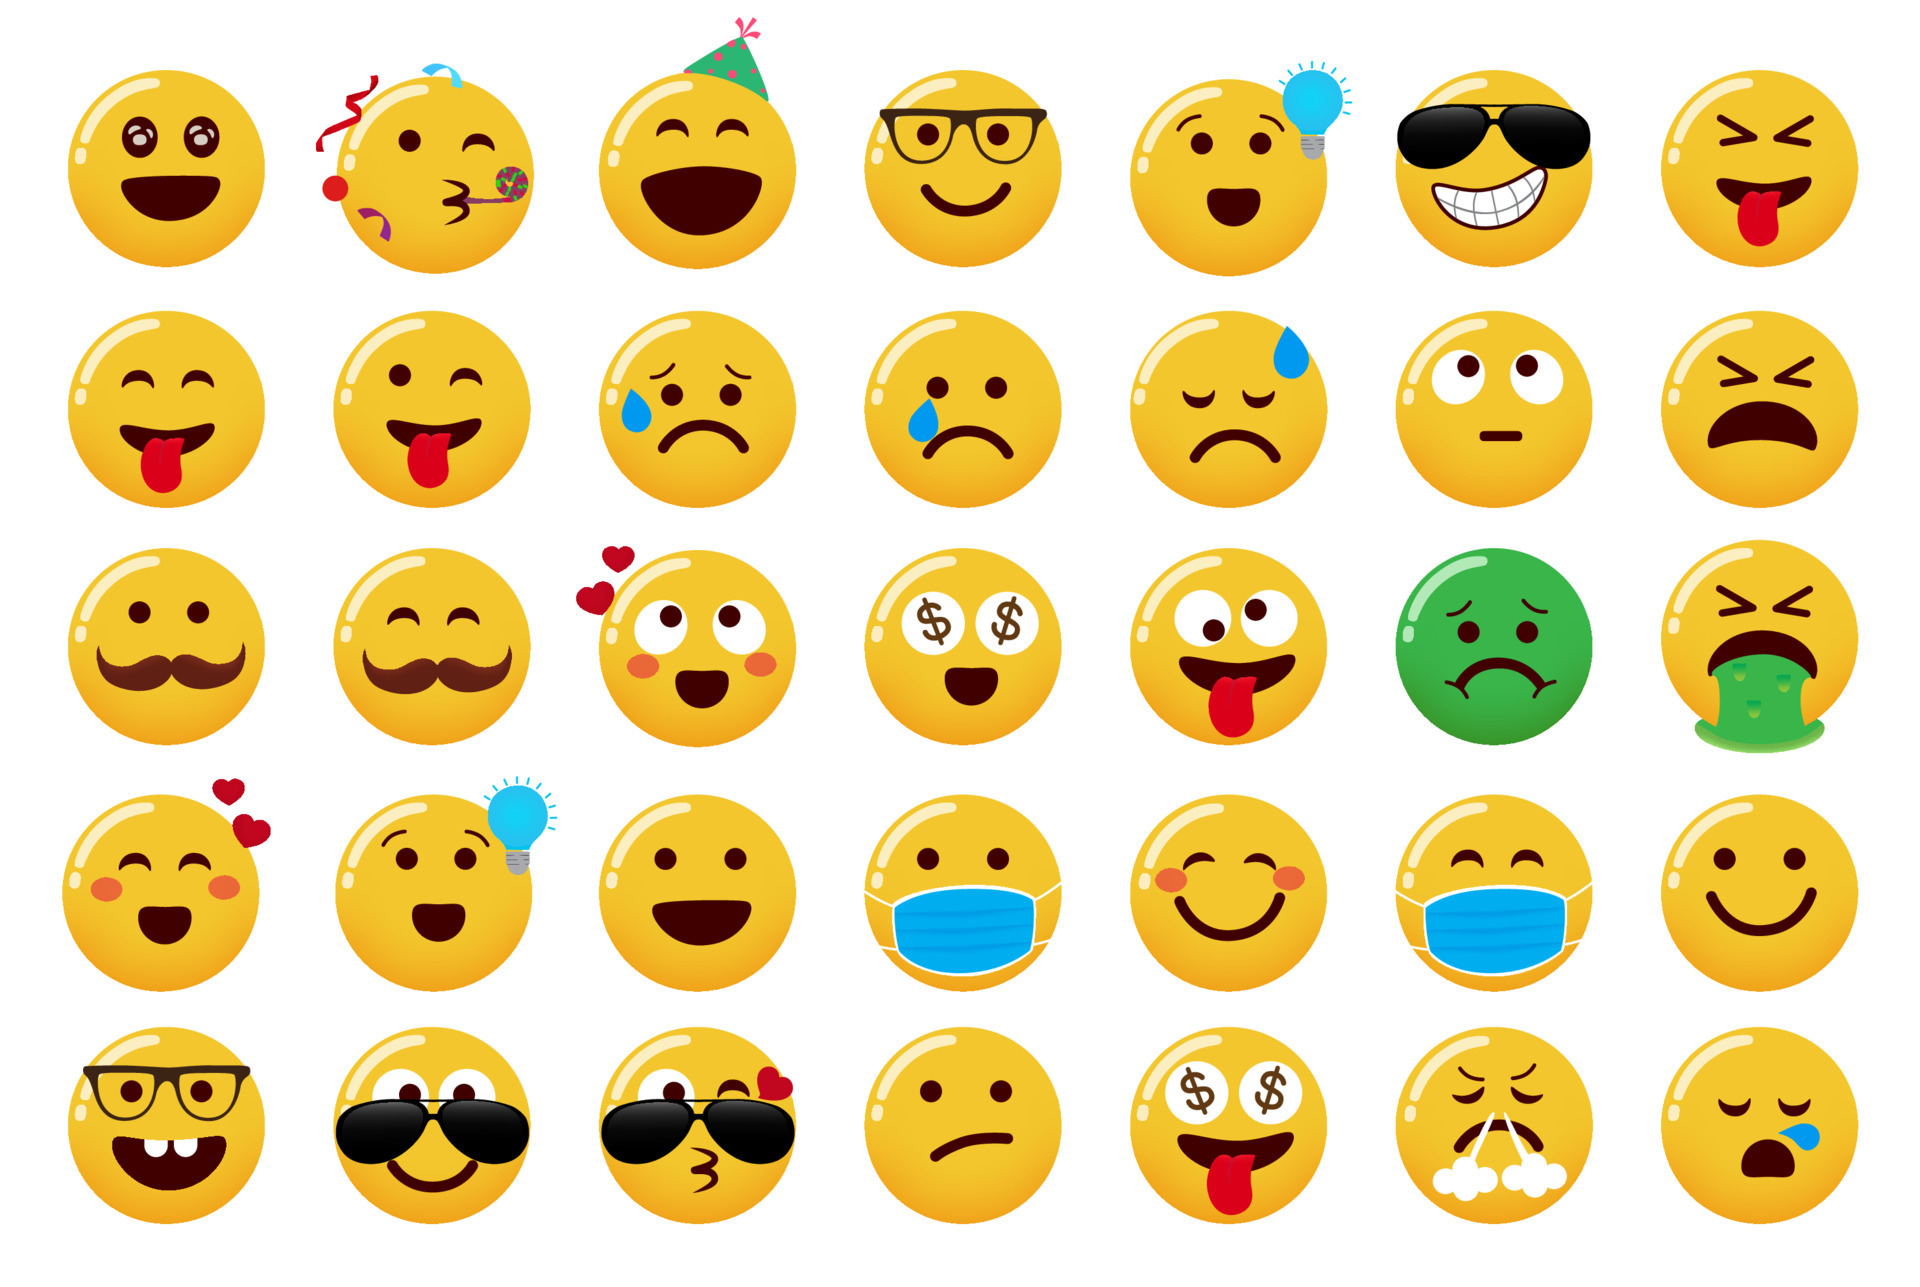 Cute emoji symbols